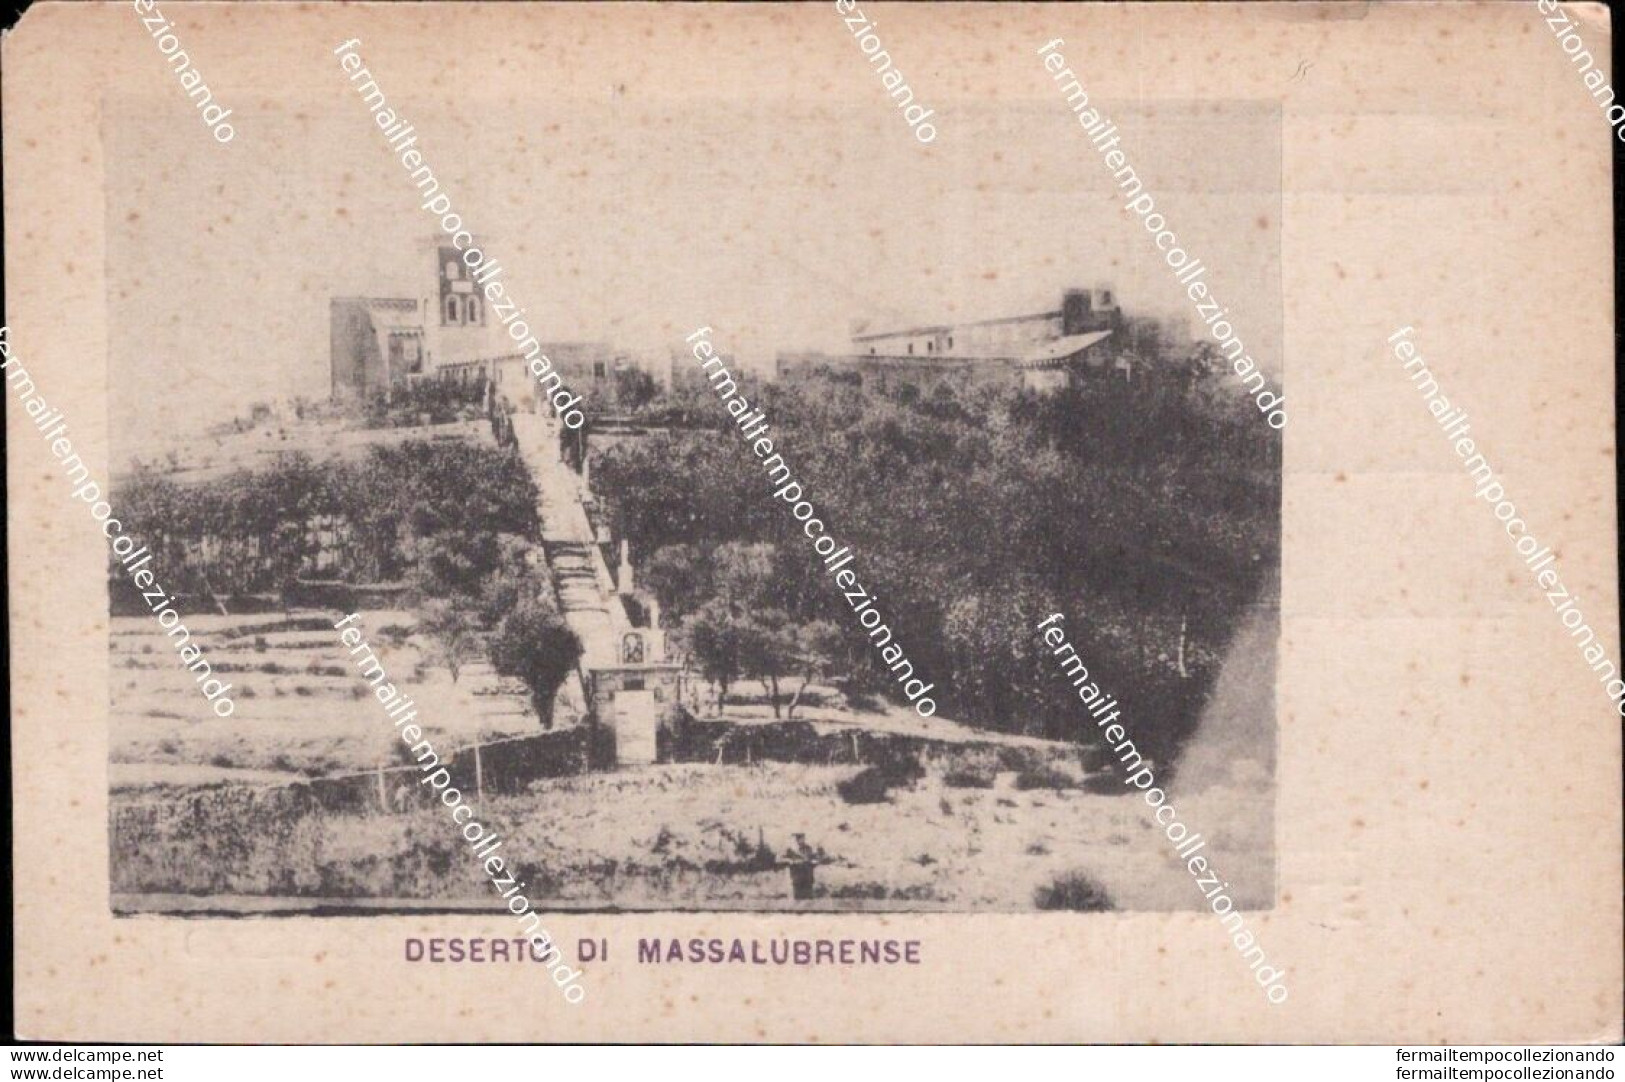 Am762 Cartolina Deserto Di Massalubrense Napoli Campania - Napoli (Napels)